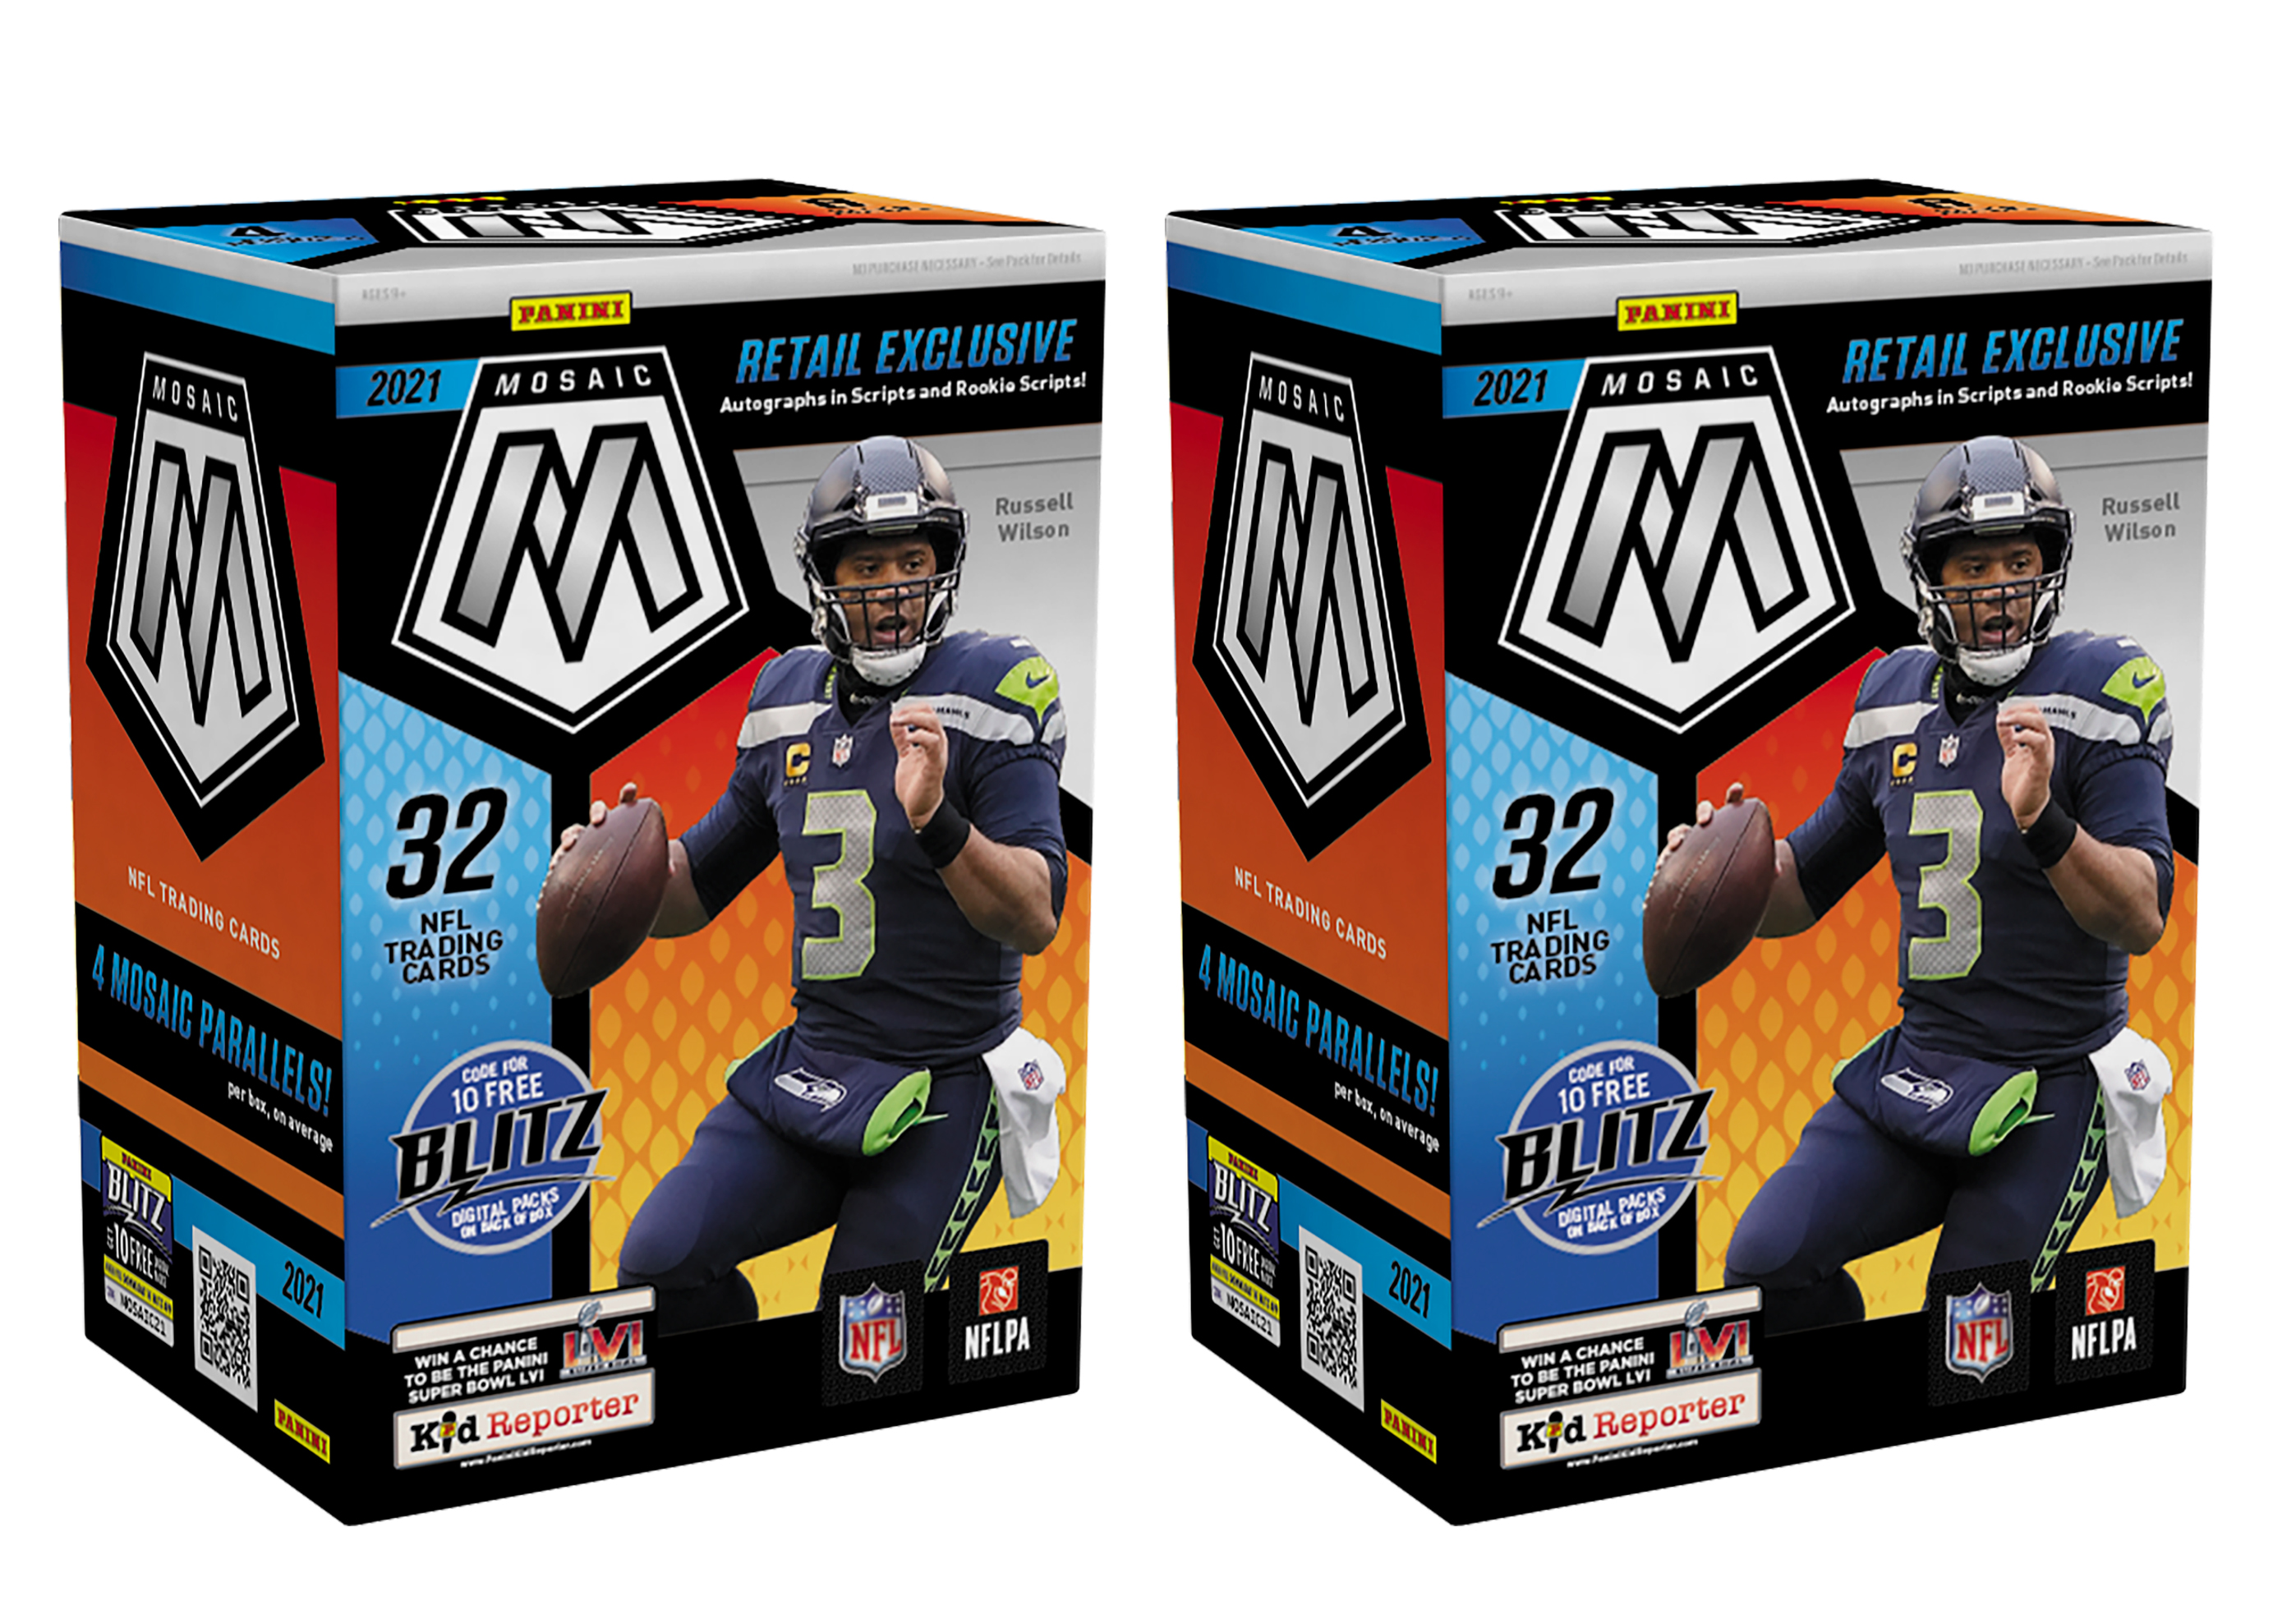 NFL 2021 パニーニ モザイク フットボール カード ブラスターボックス